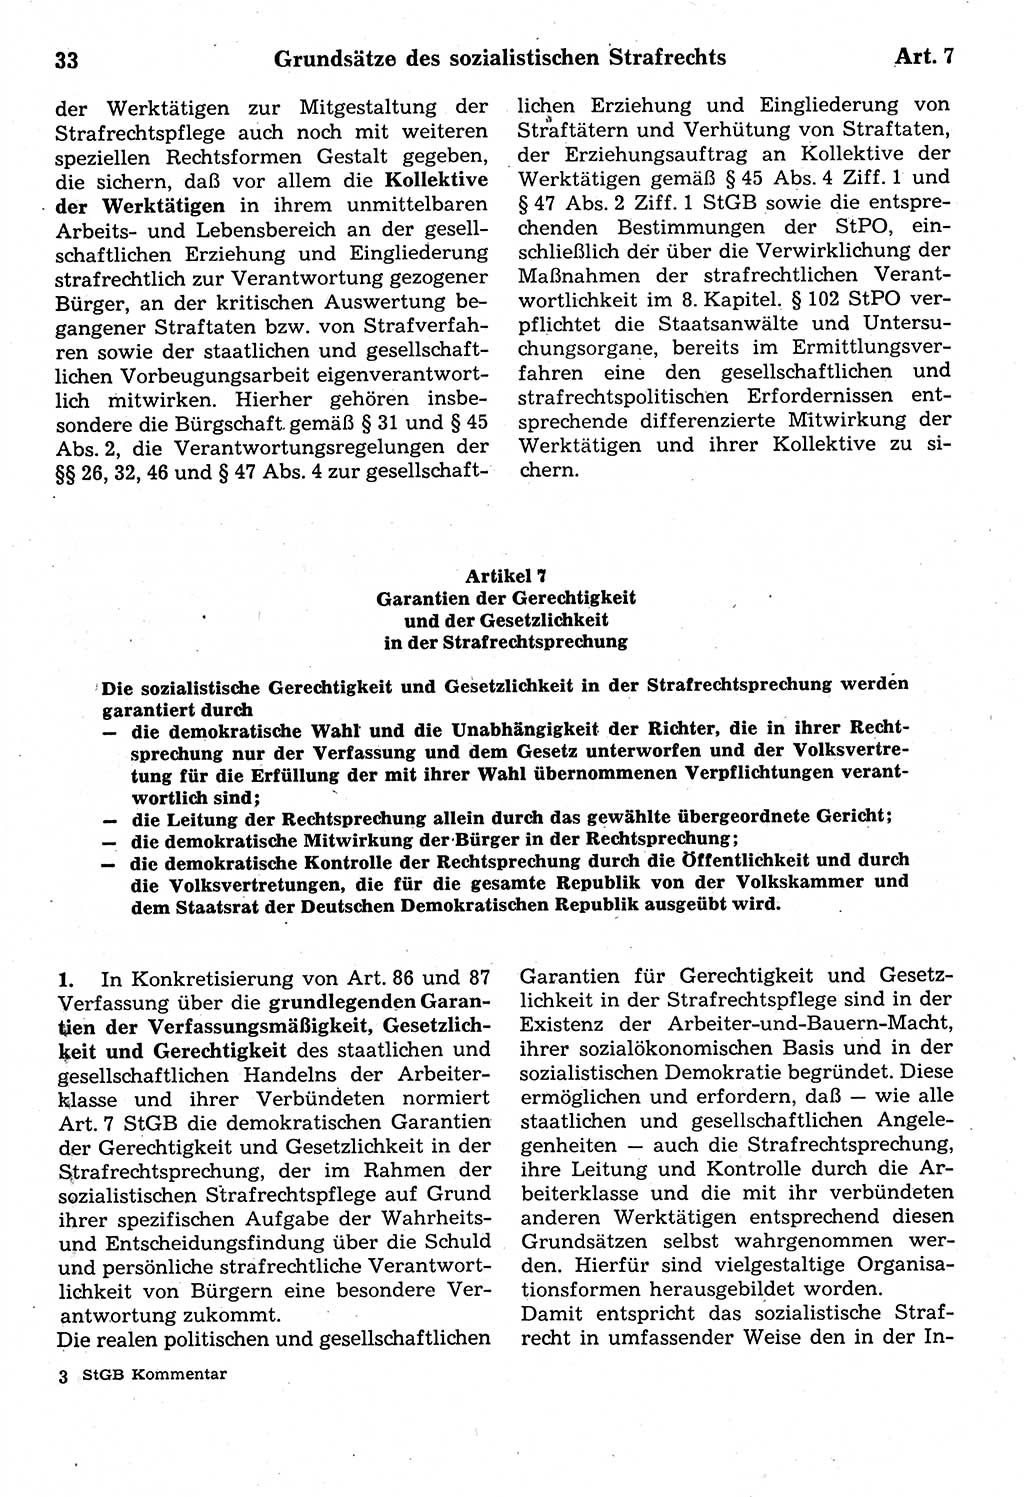 Strafrecht der Deutschen Demokratischen Republik (DDR), Kommentar zum Strafgesetzbuch (StGB) 1987, Seite 33 (Strafr. DDR Komm. StGB 1987, S. 33)